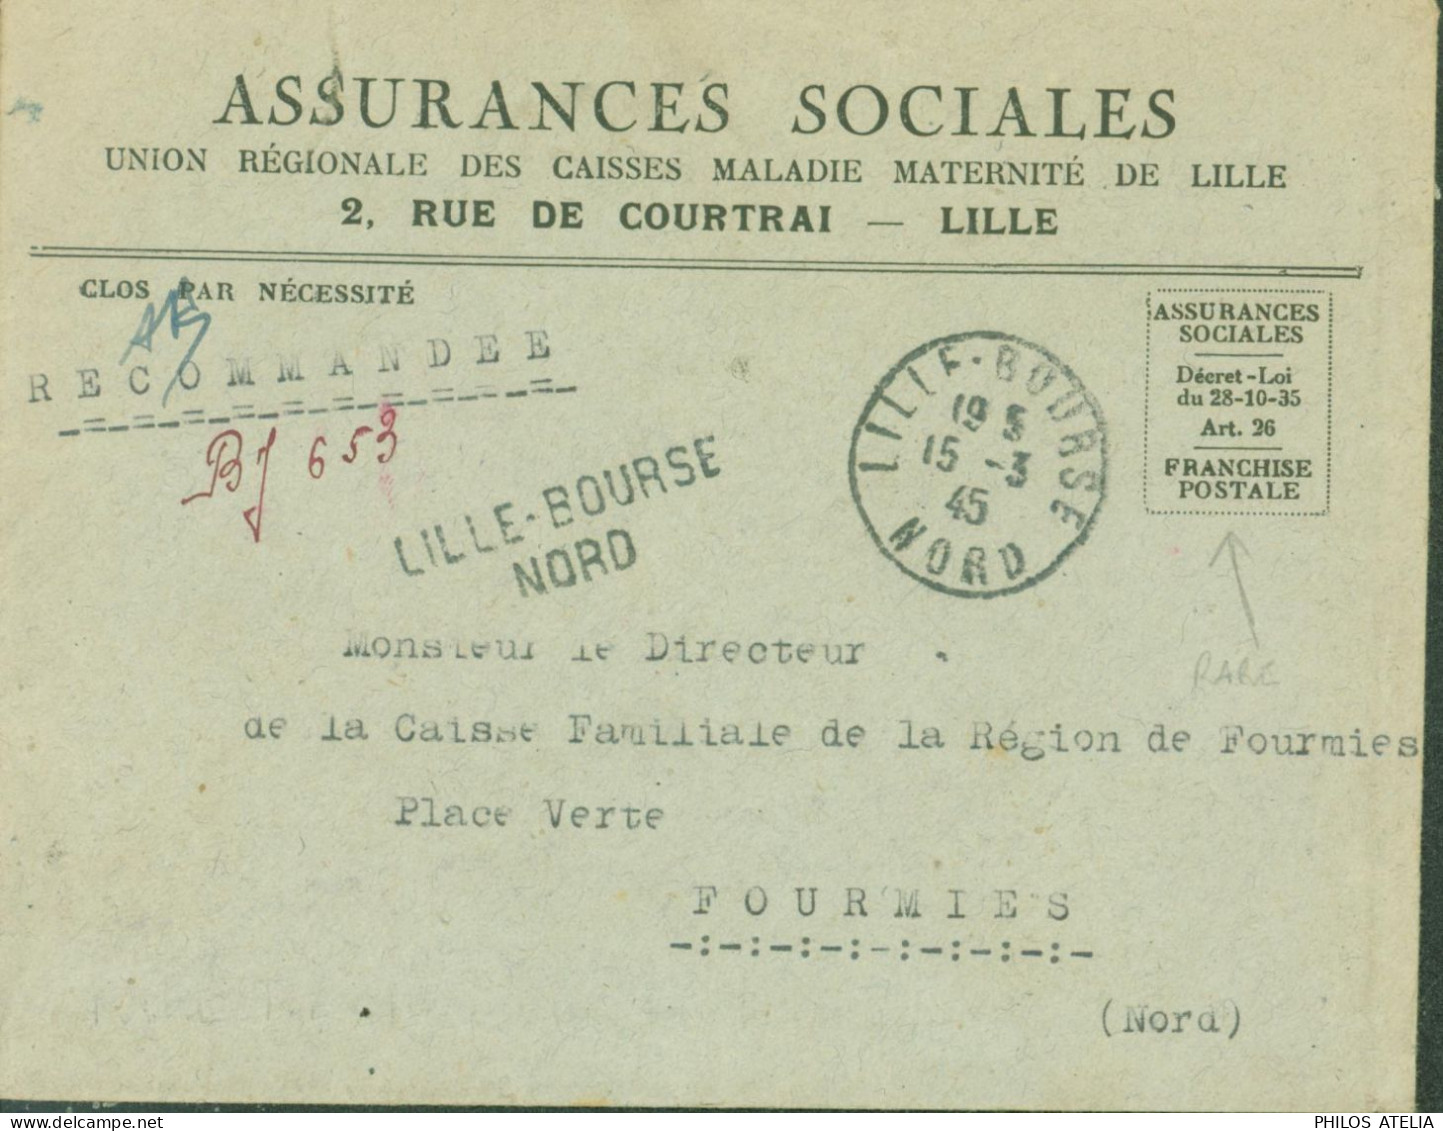 Guerre 40 Recommandé De Fortune BJ 653 Lille Bourse Nord Avec Franchise Postale Assurances Sociales CAD 15 3 45 - Guerra Del 1939-45